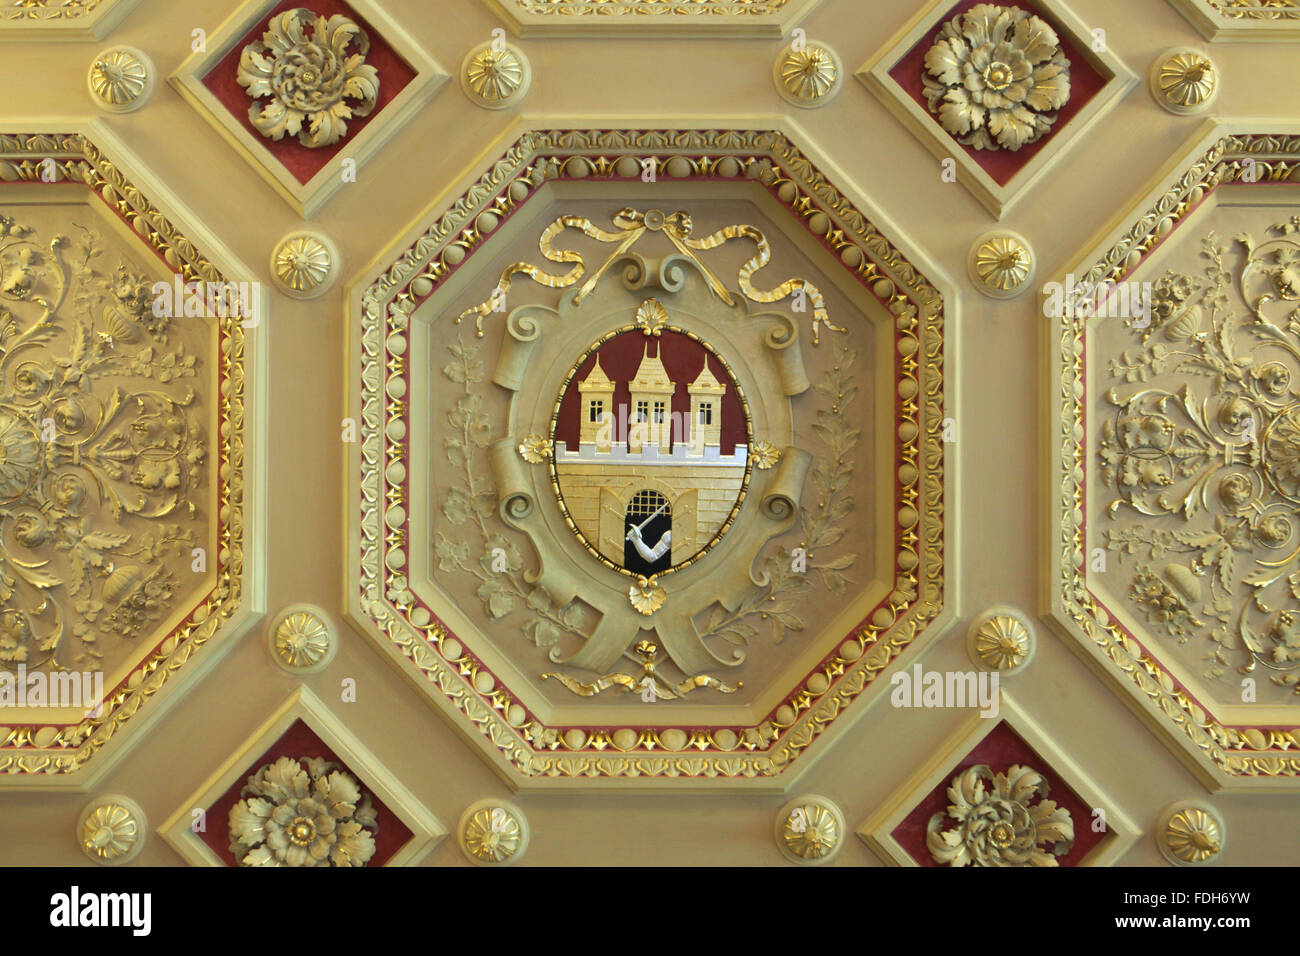 Wappen von Prag auf der Stuckdecke im Zofin Palast auf Slovansky Insel in Prag, Tschechische Republik dargestellt. Stockfoto